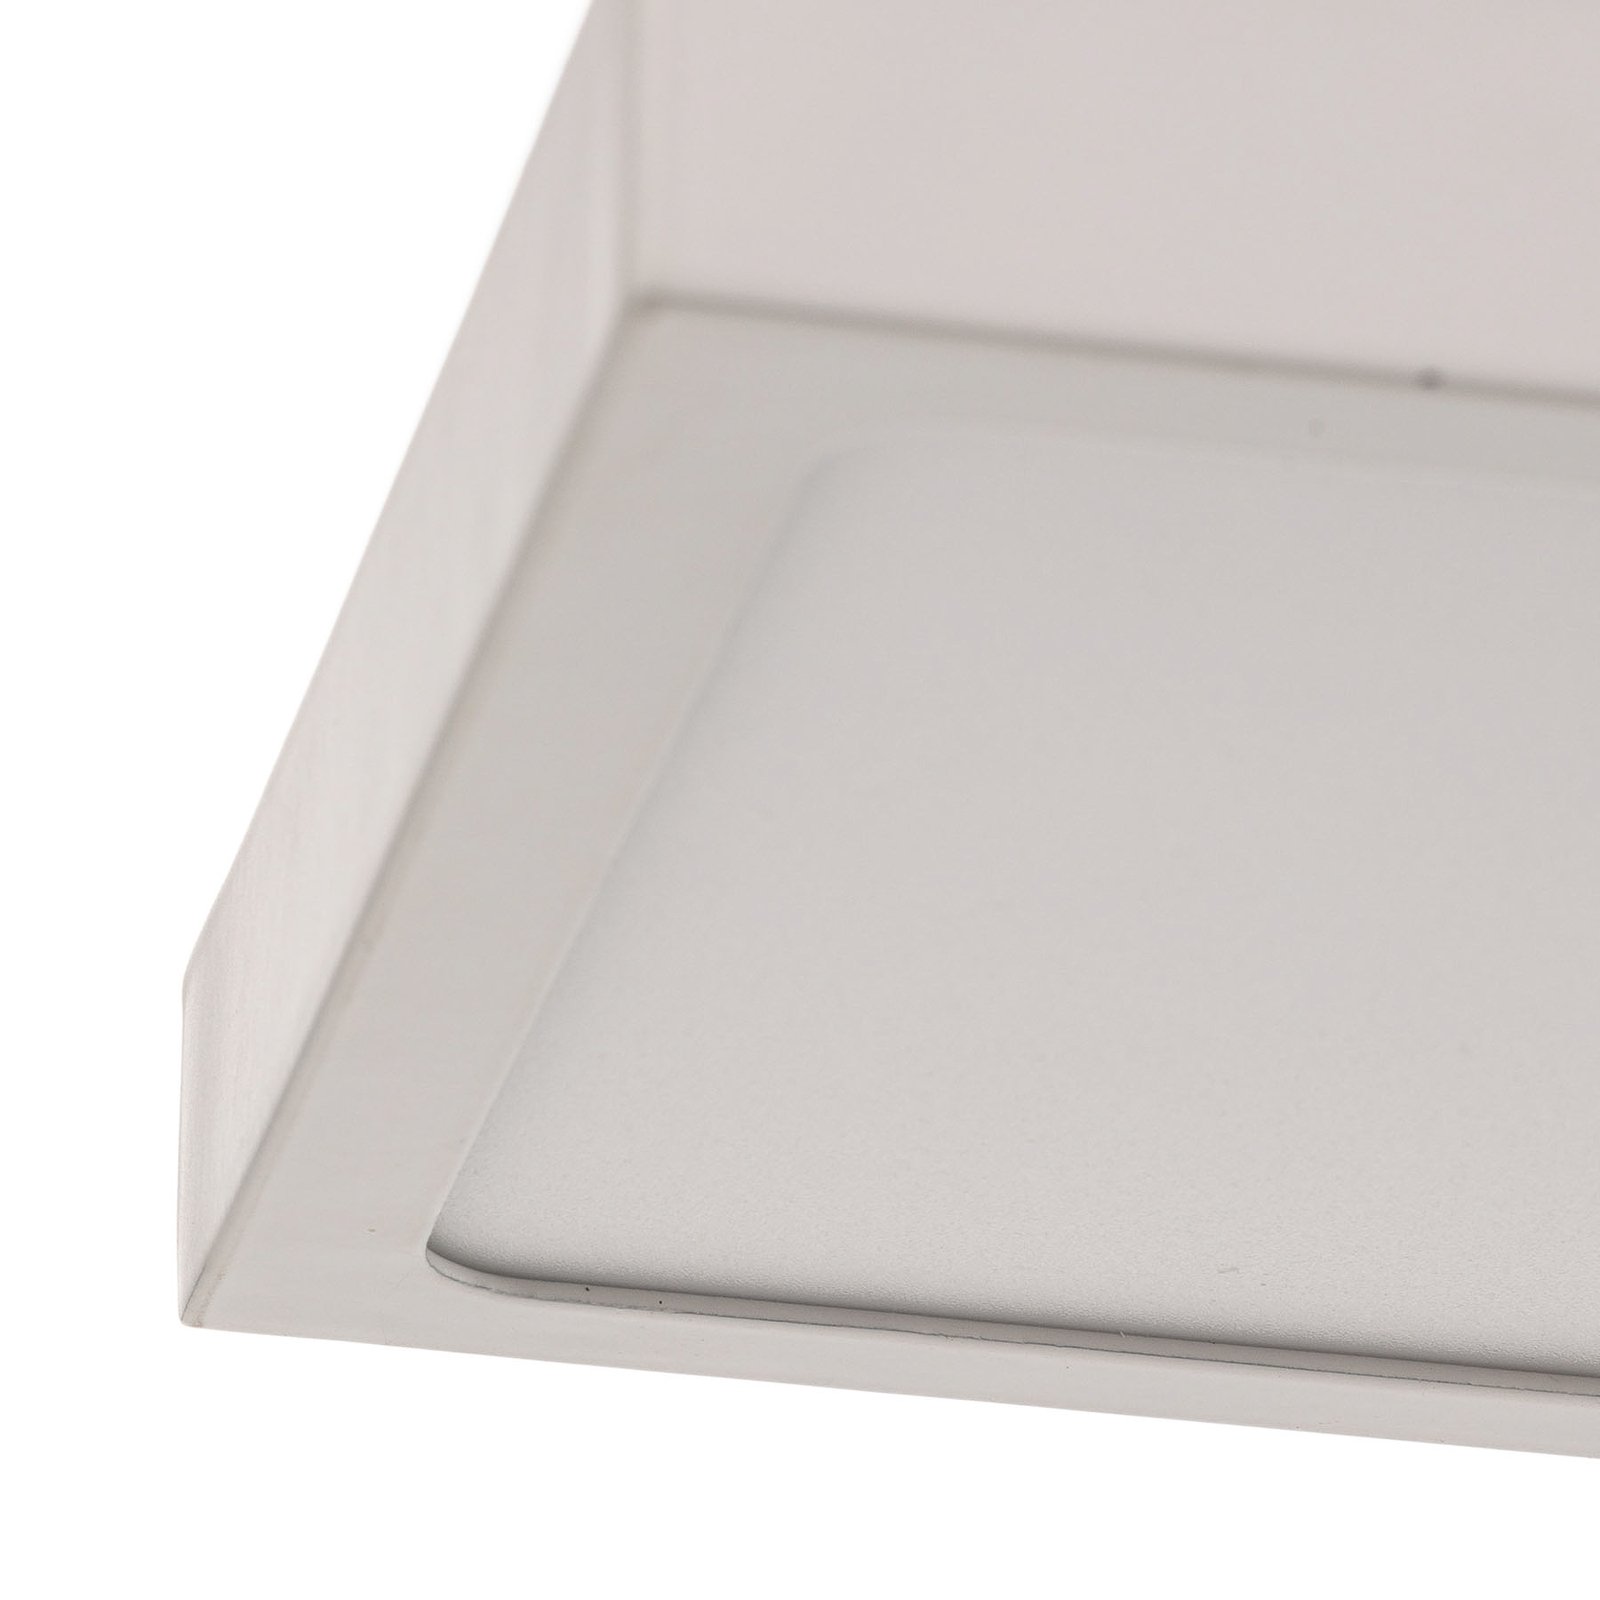 Vika LED wall light, square, white, 18 x 18 cm